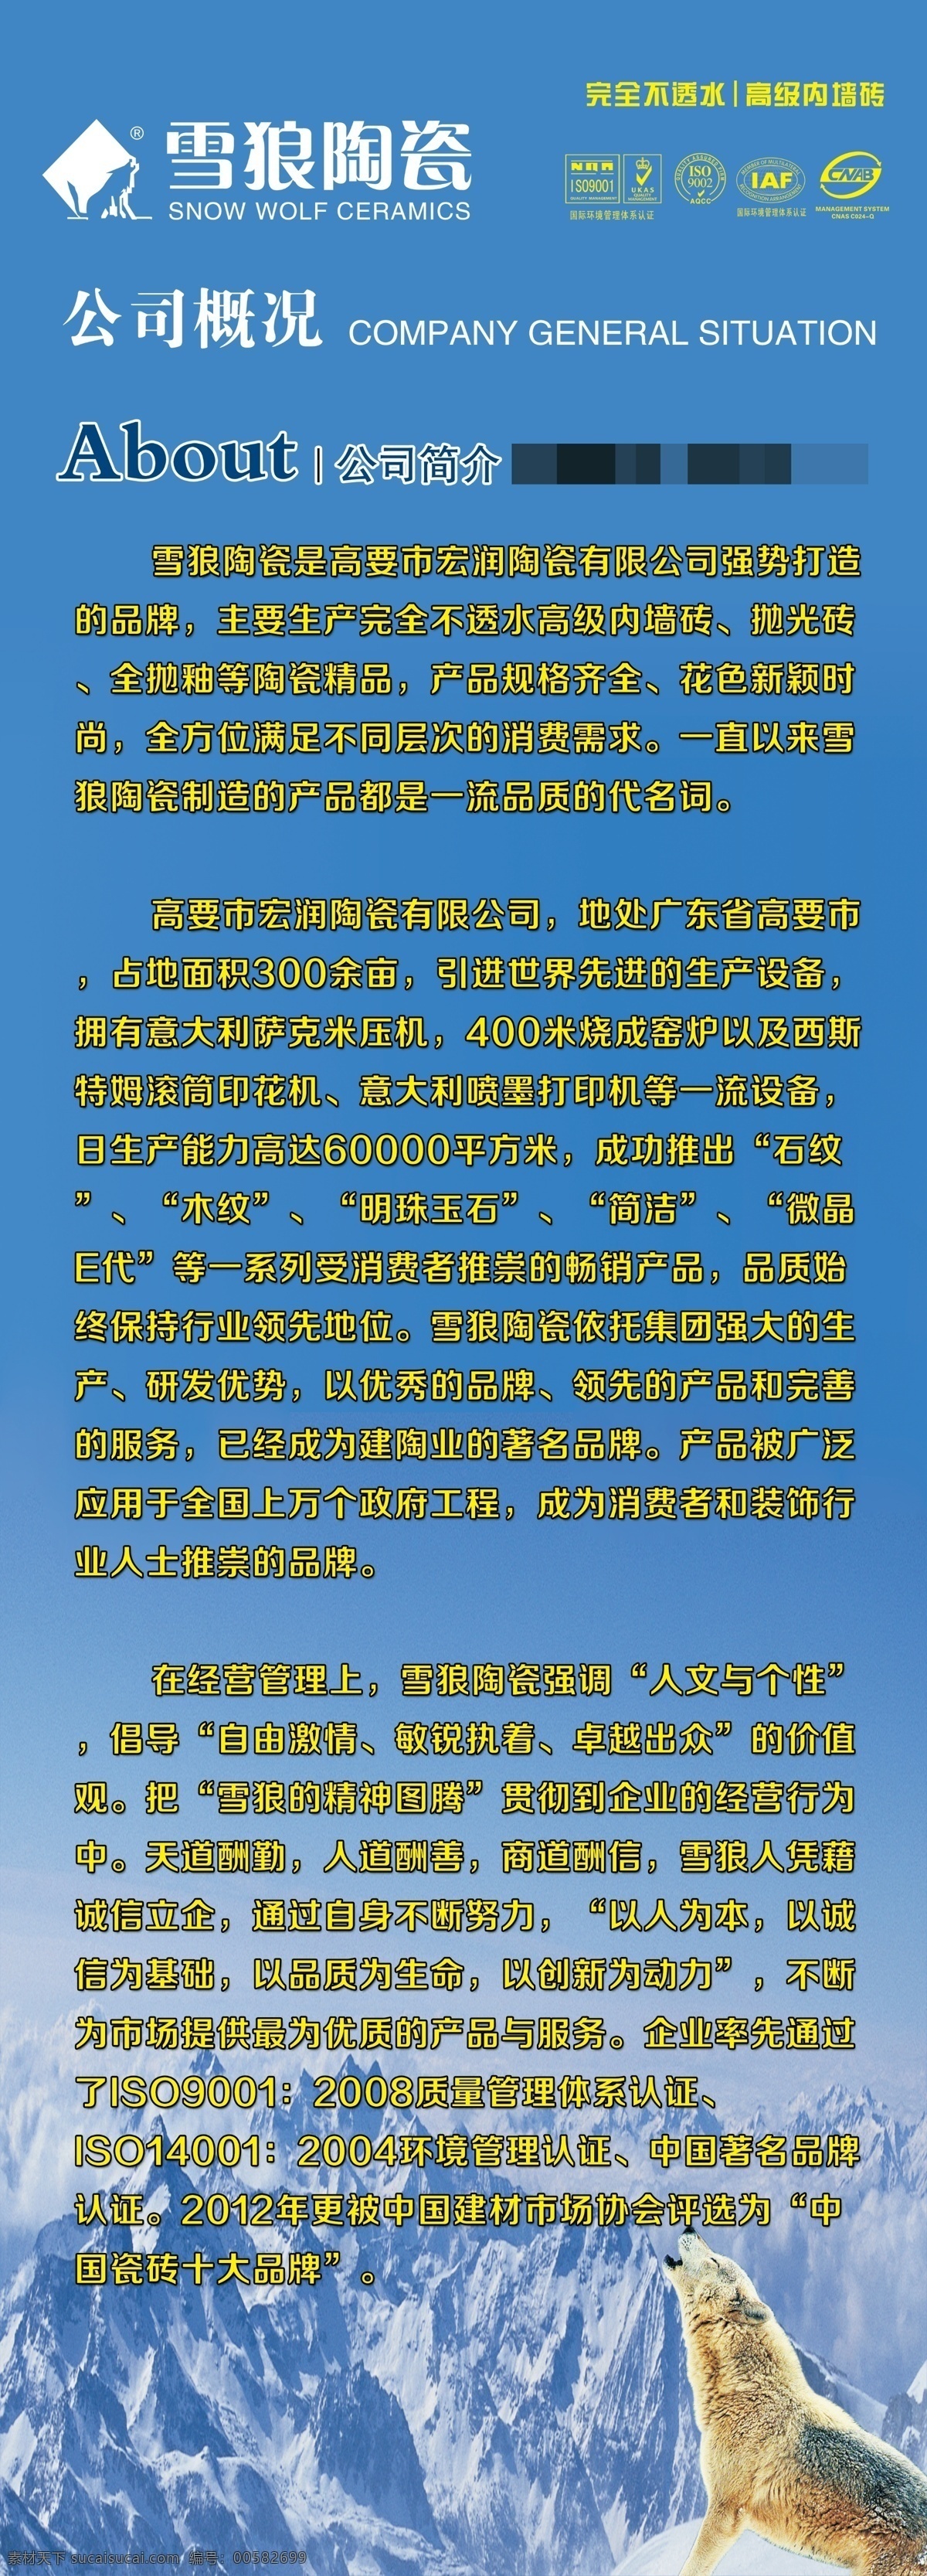 雪狼陶瓷 雪狼 公司简介 中国十大品牌 雪山 狼 宣传 广告 背景 广告设计模板 展板模板 源文件